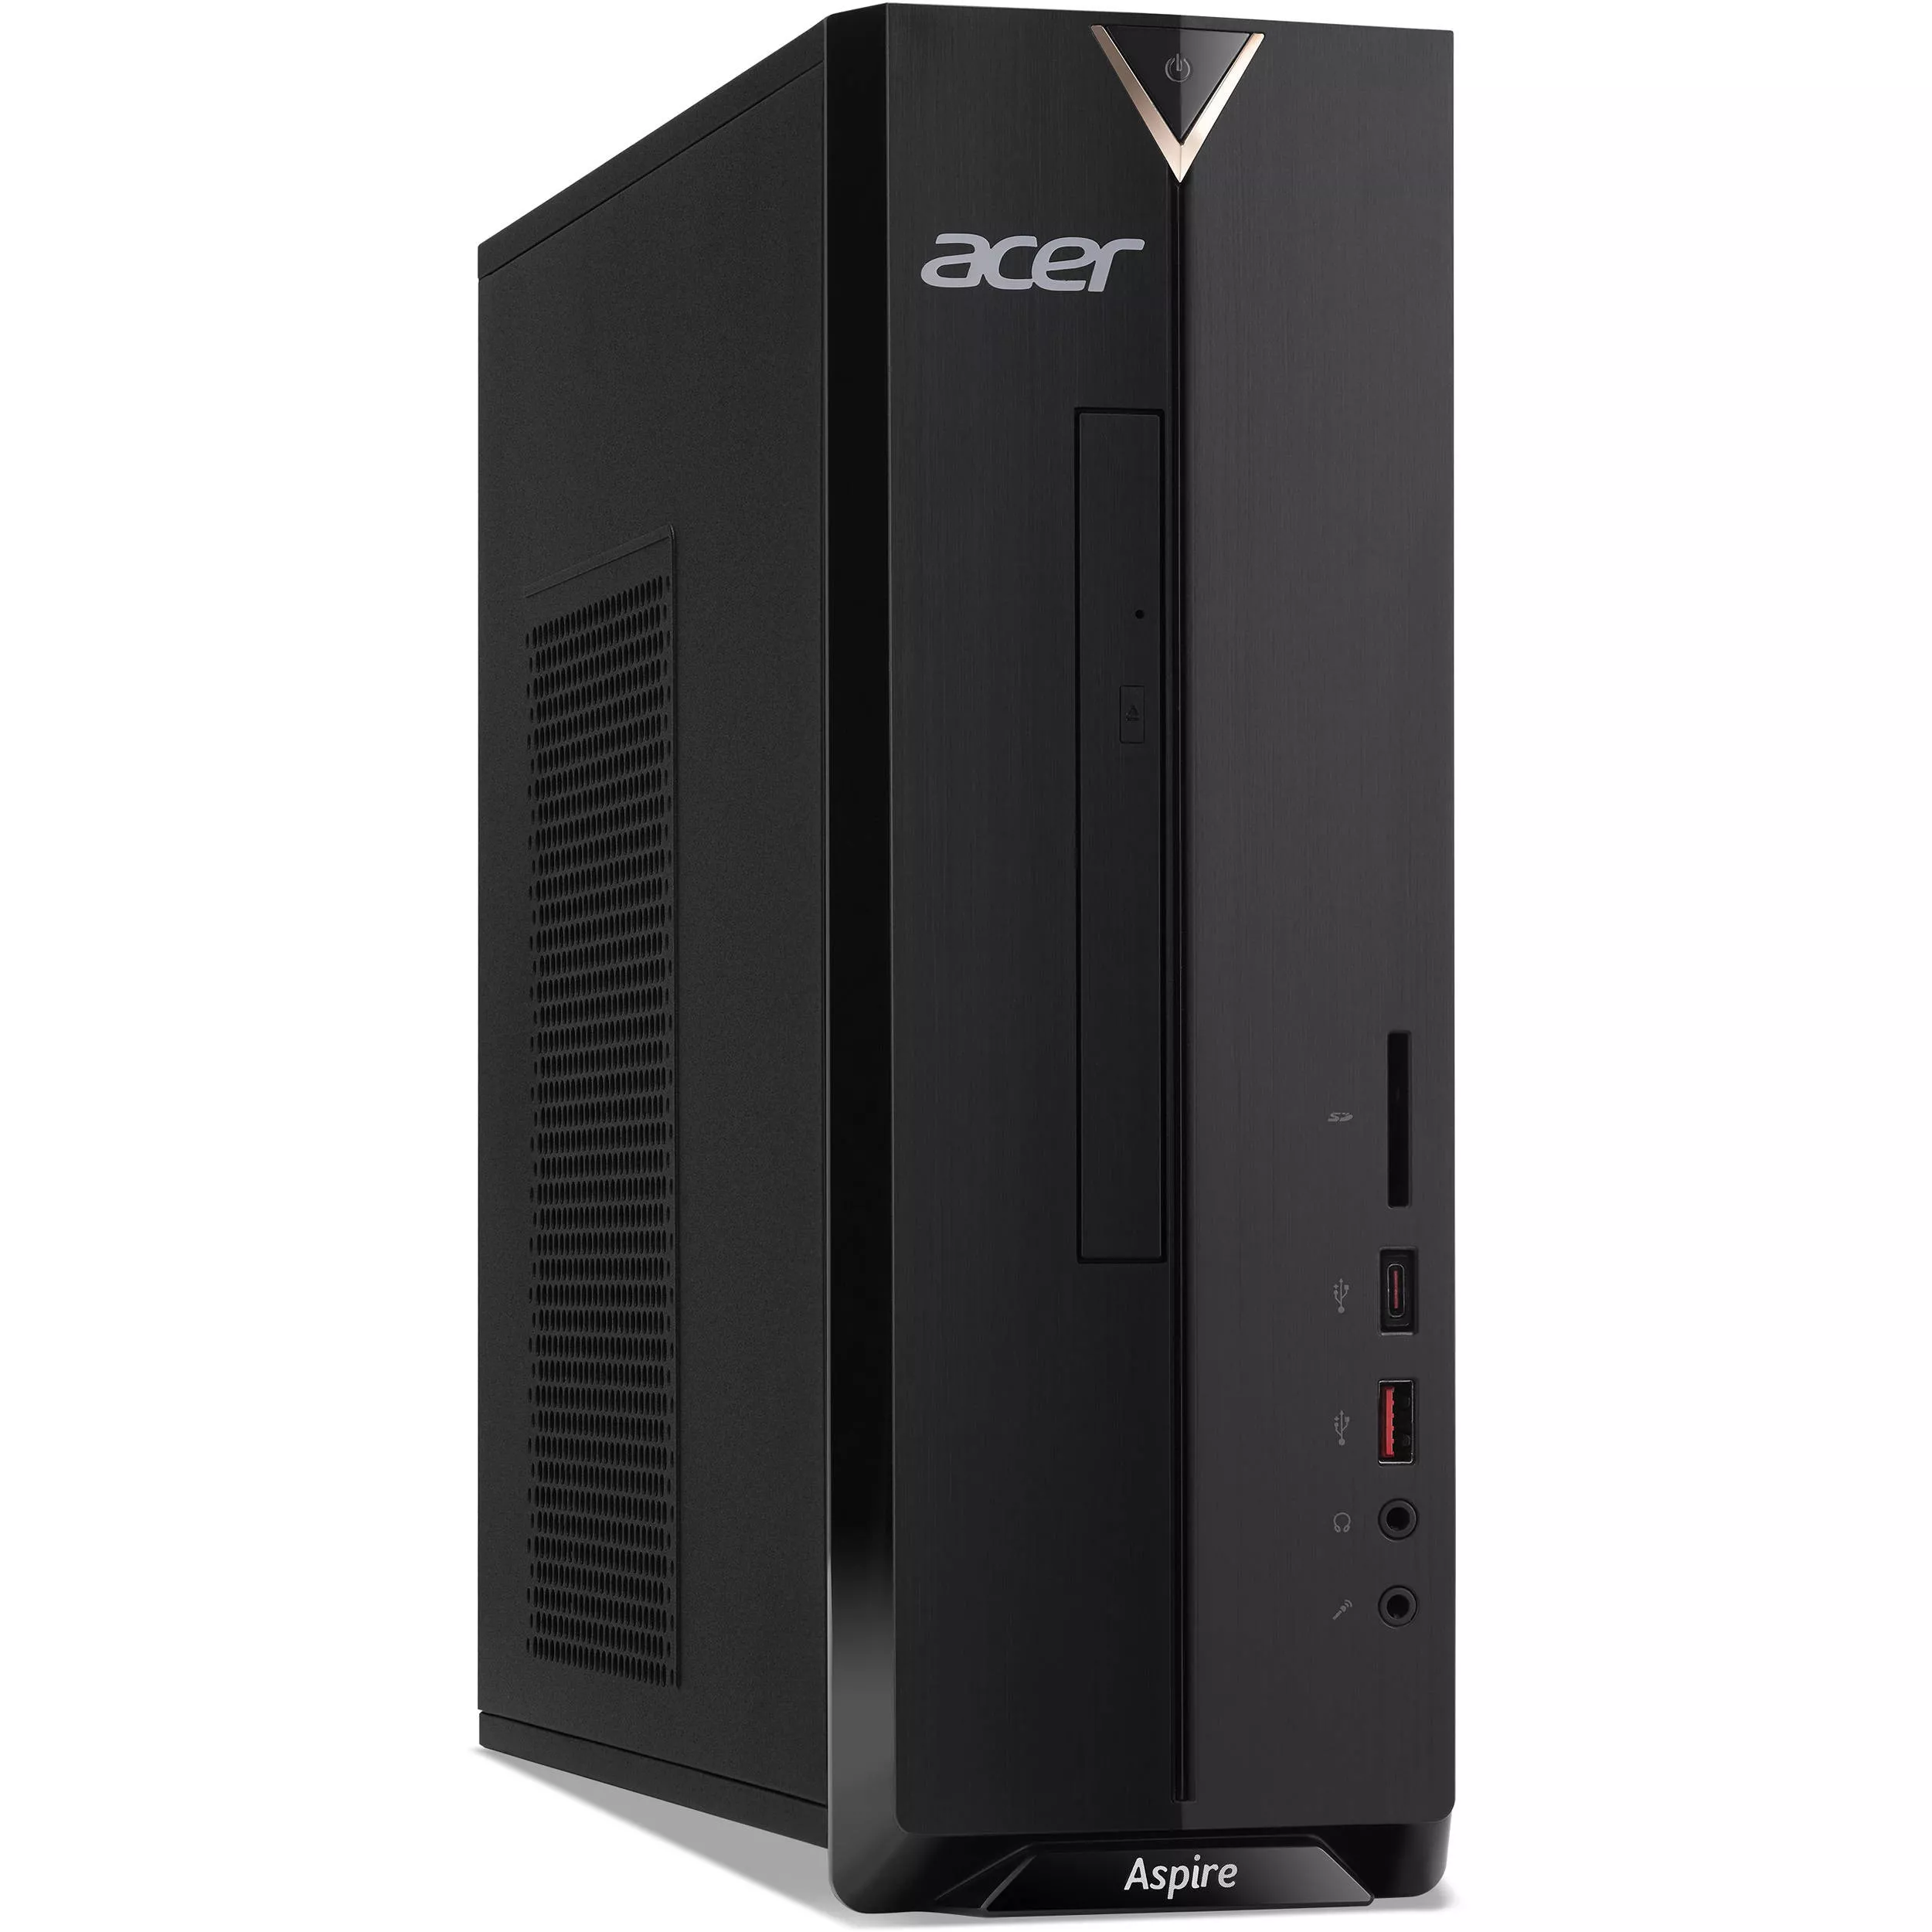  Máy tính để bàn Acer AS XC-885 i3-9100 (4*3.60)/4G/1T7/DVDRW/WLac/KB/MOUSE/ĐEN/W10SL 